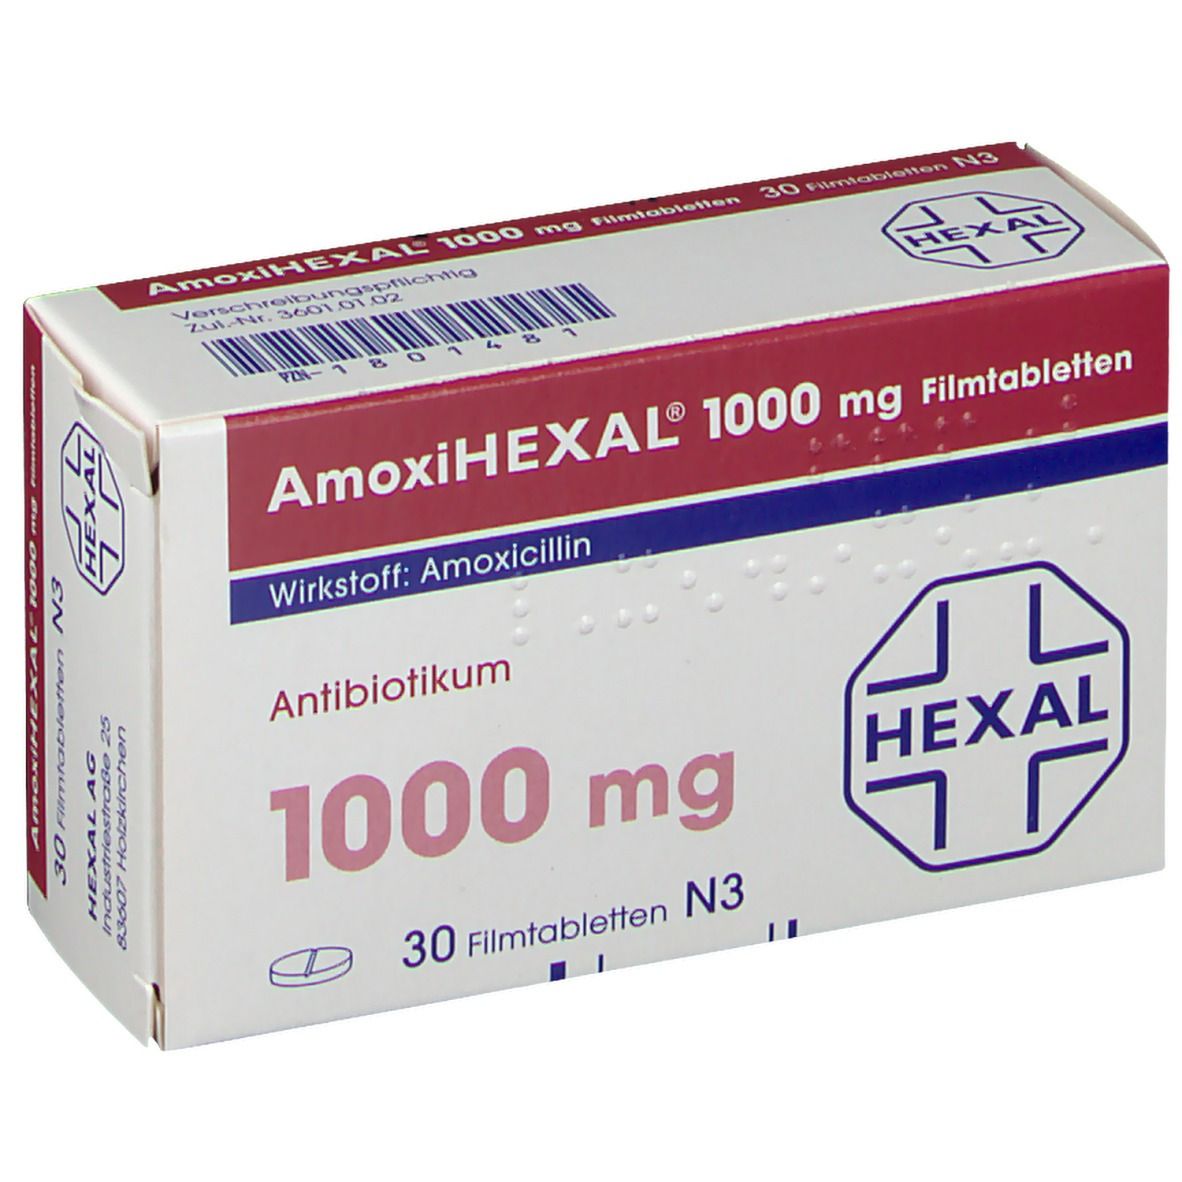 AmoxiIHEXAL® 1000 mg